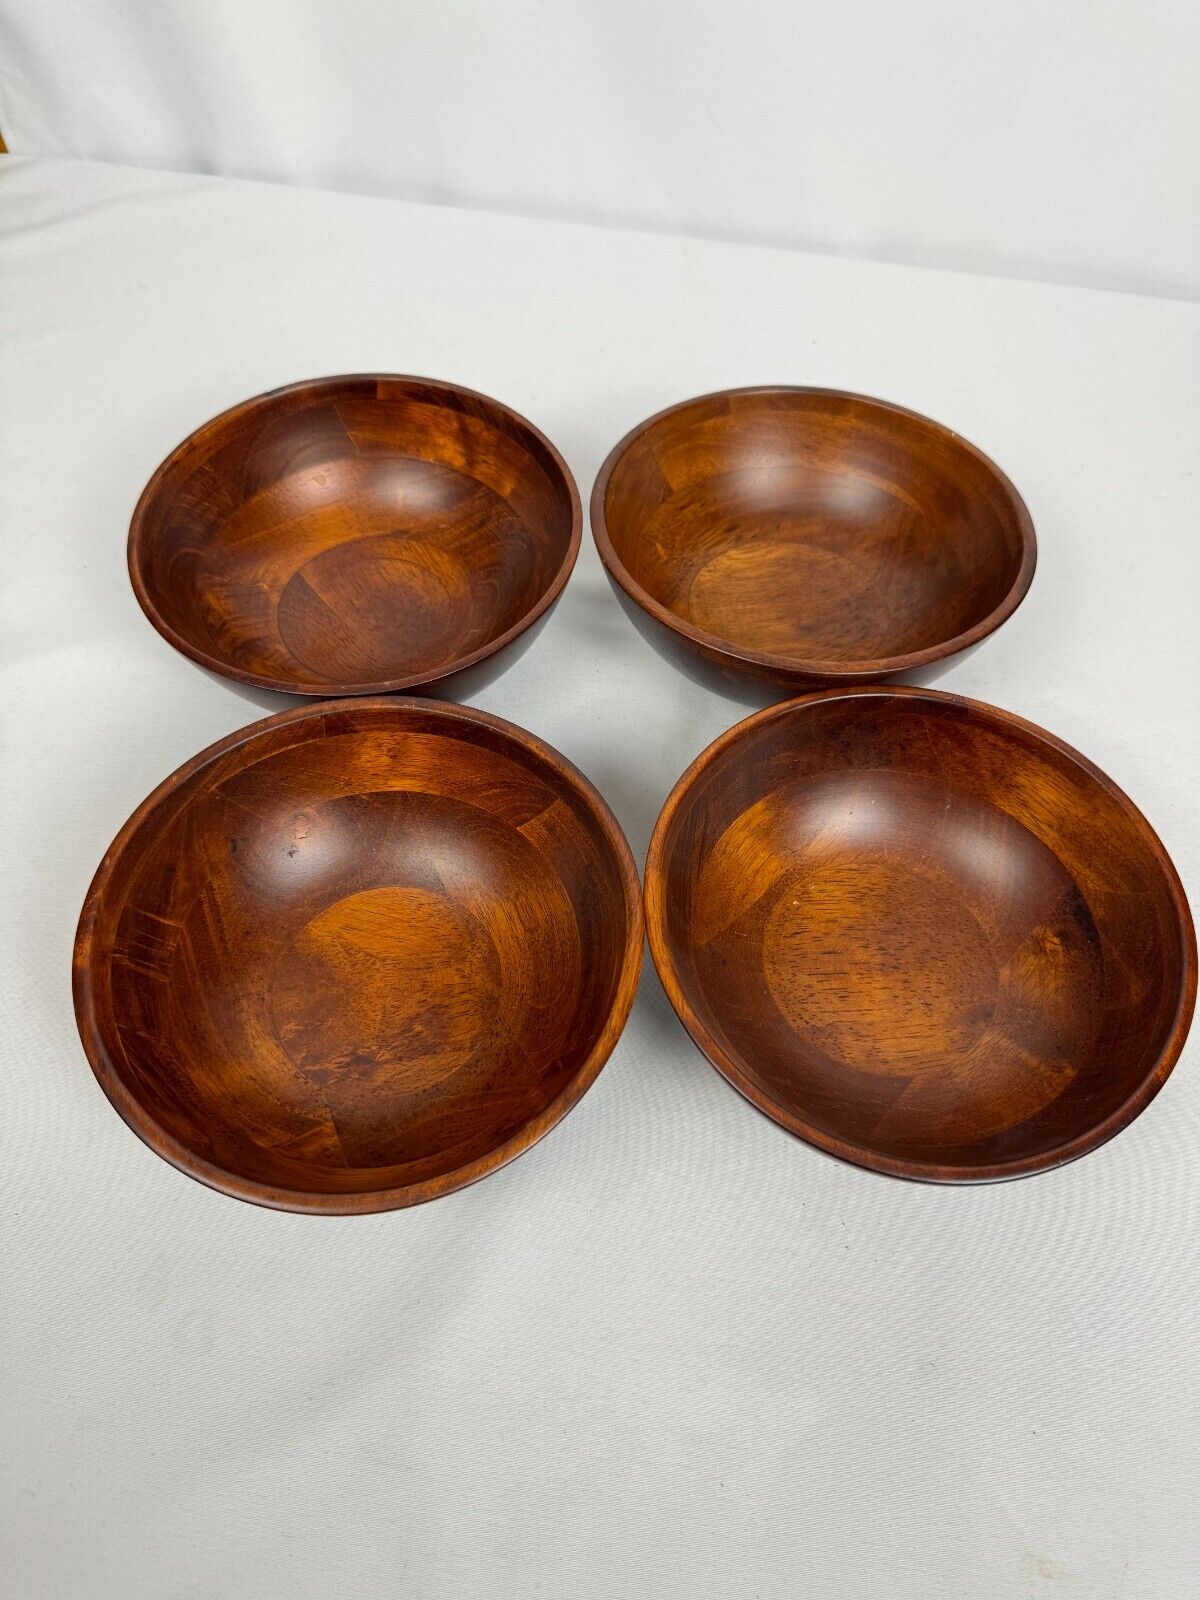 Wood Bowls Set Of 4 Serving Bowls for Salad Bowl or Fruit Bowl